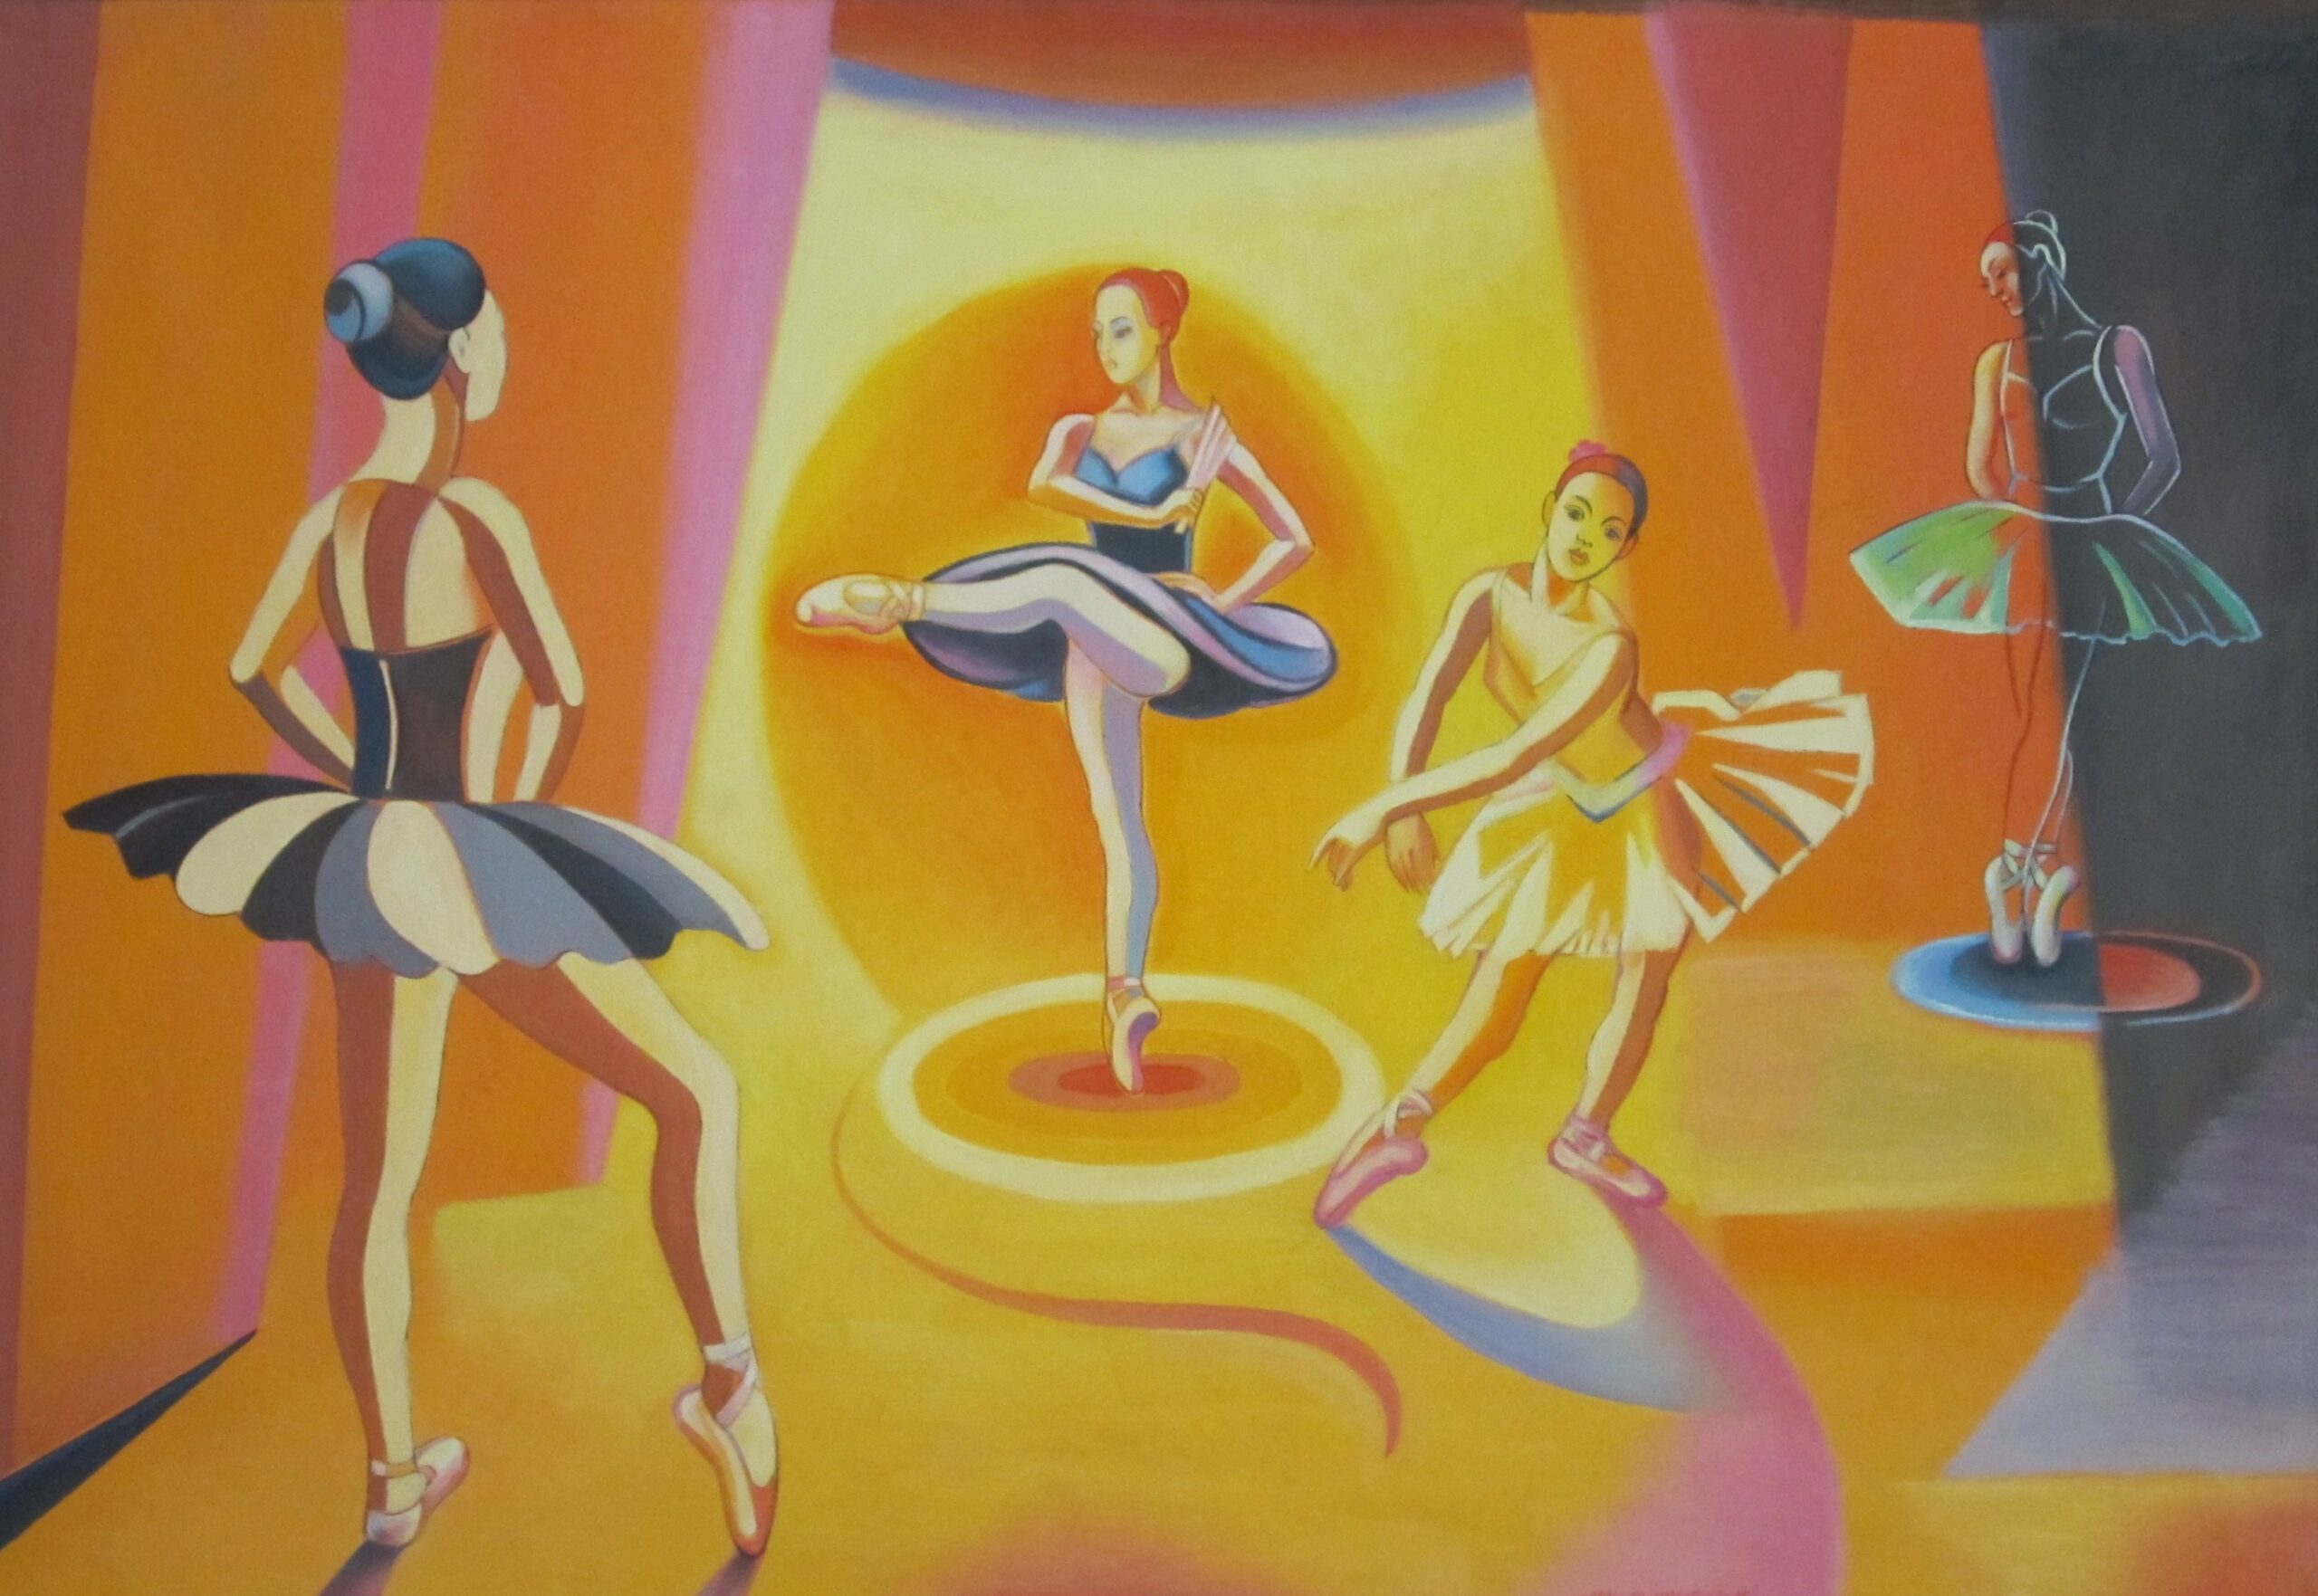 Les ballerines sur scen, 54 x 81 cm,hst, 2016